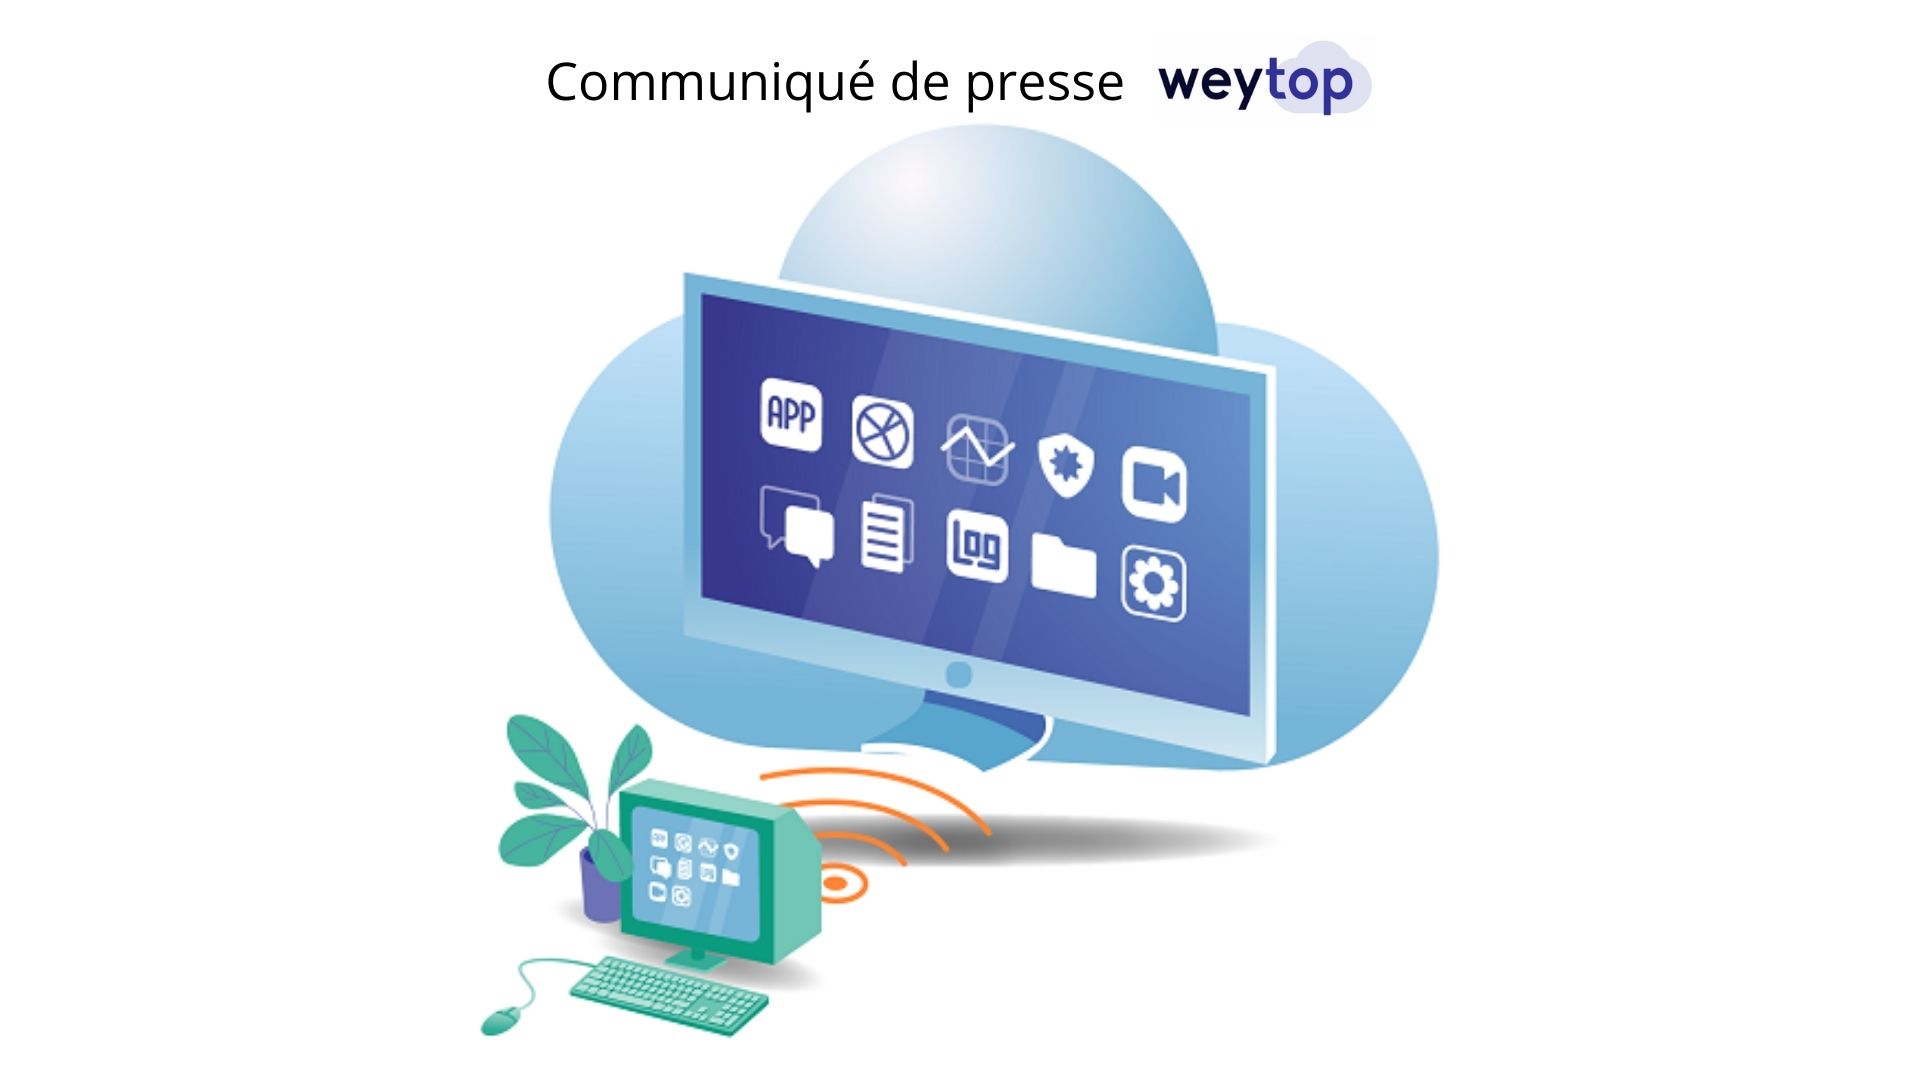 Weytop, la start-up française lance le premier Cloud PC haute performance pour l’entreprise – Communiqué de presse